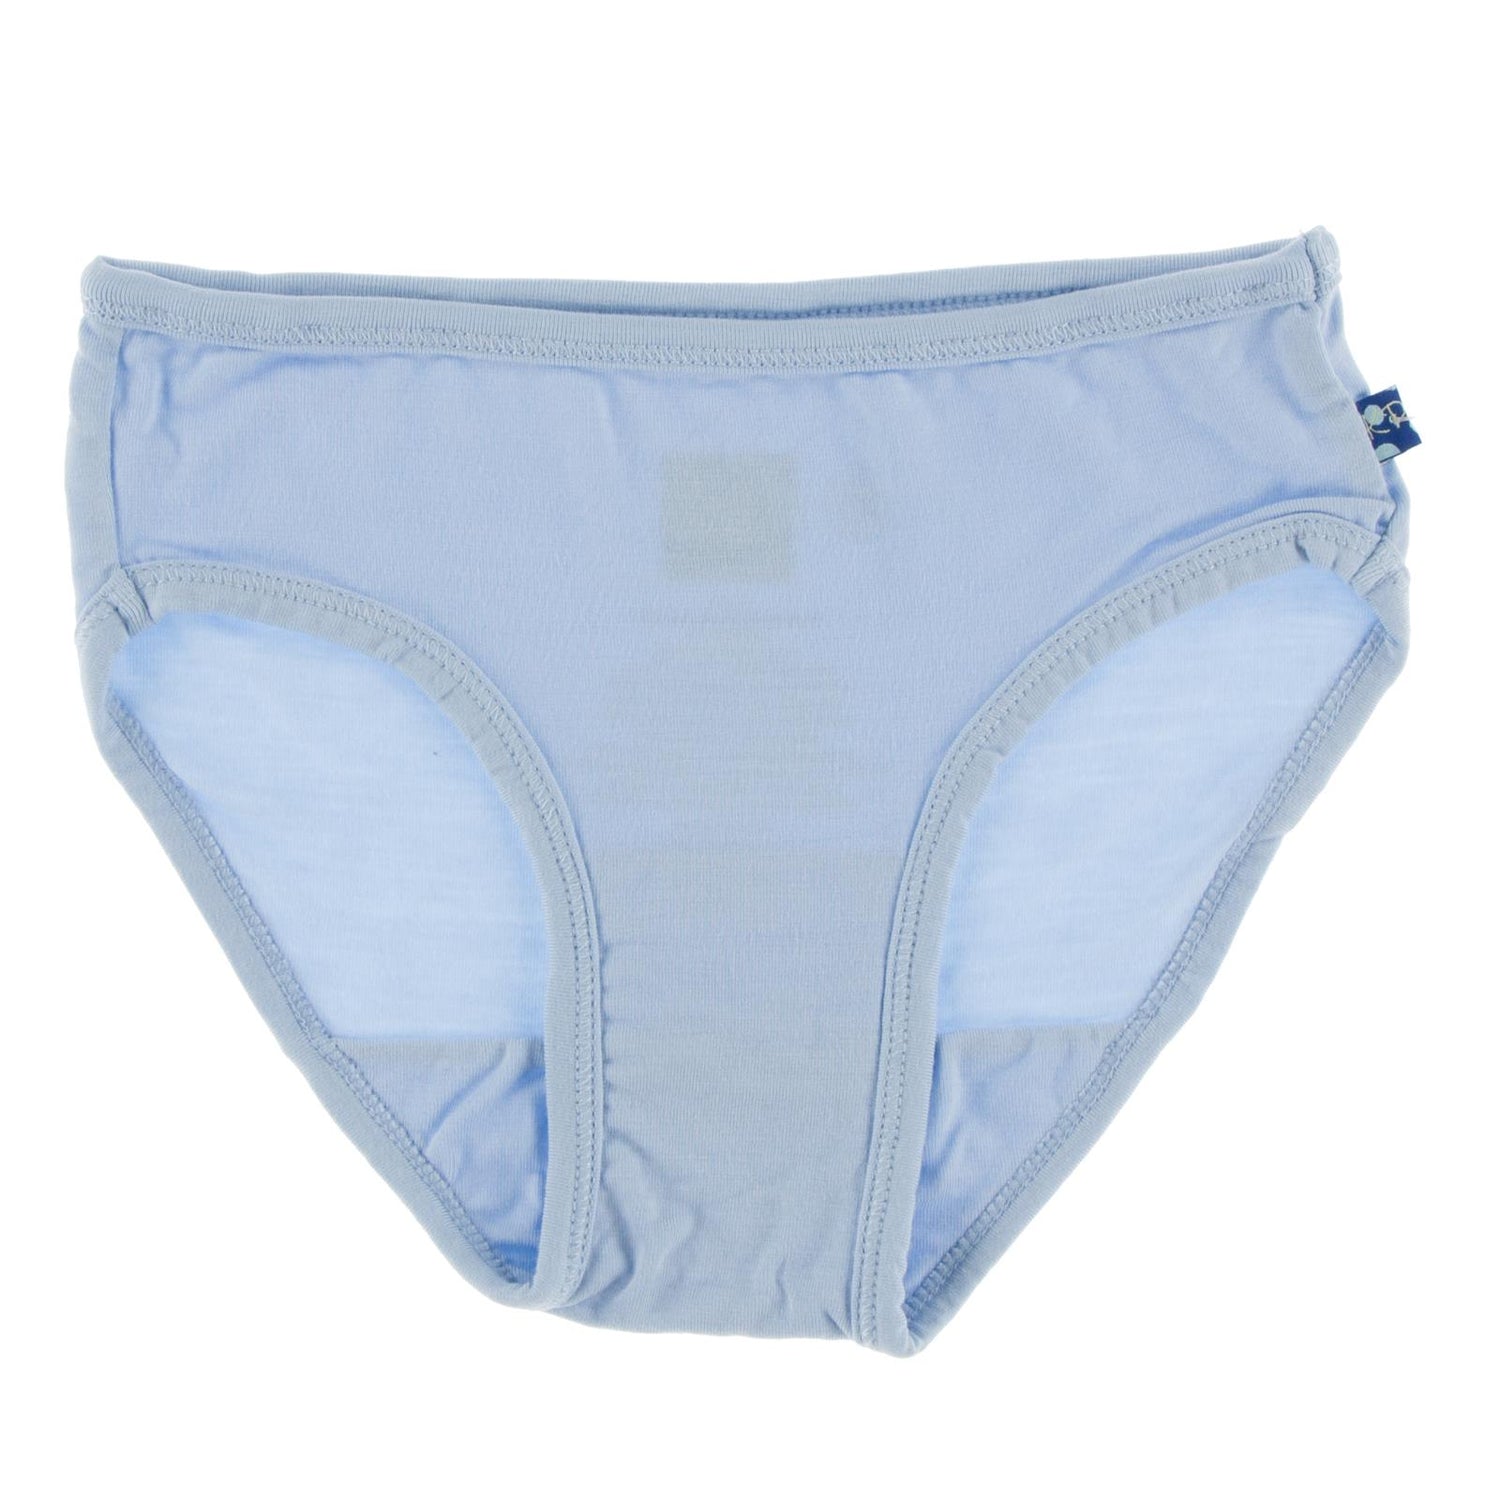 Underwear in Pond